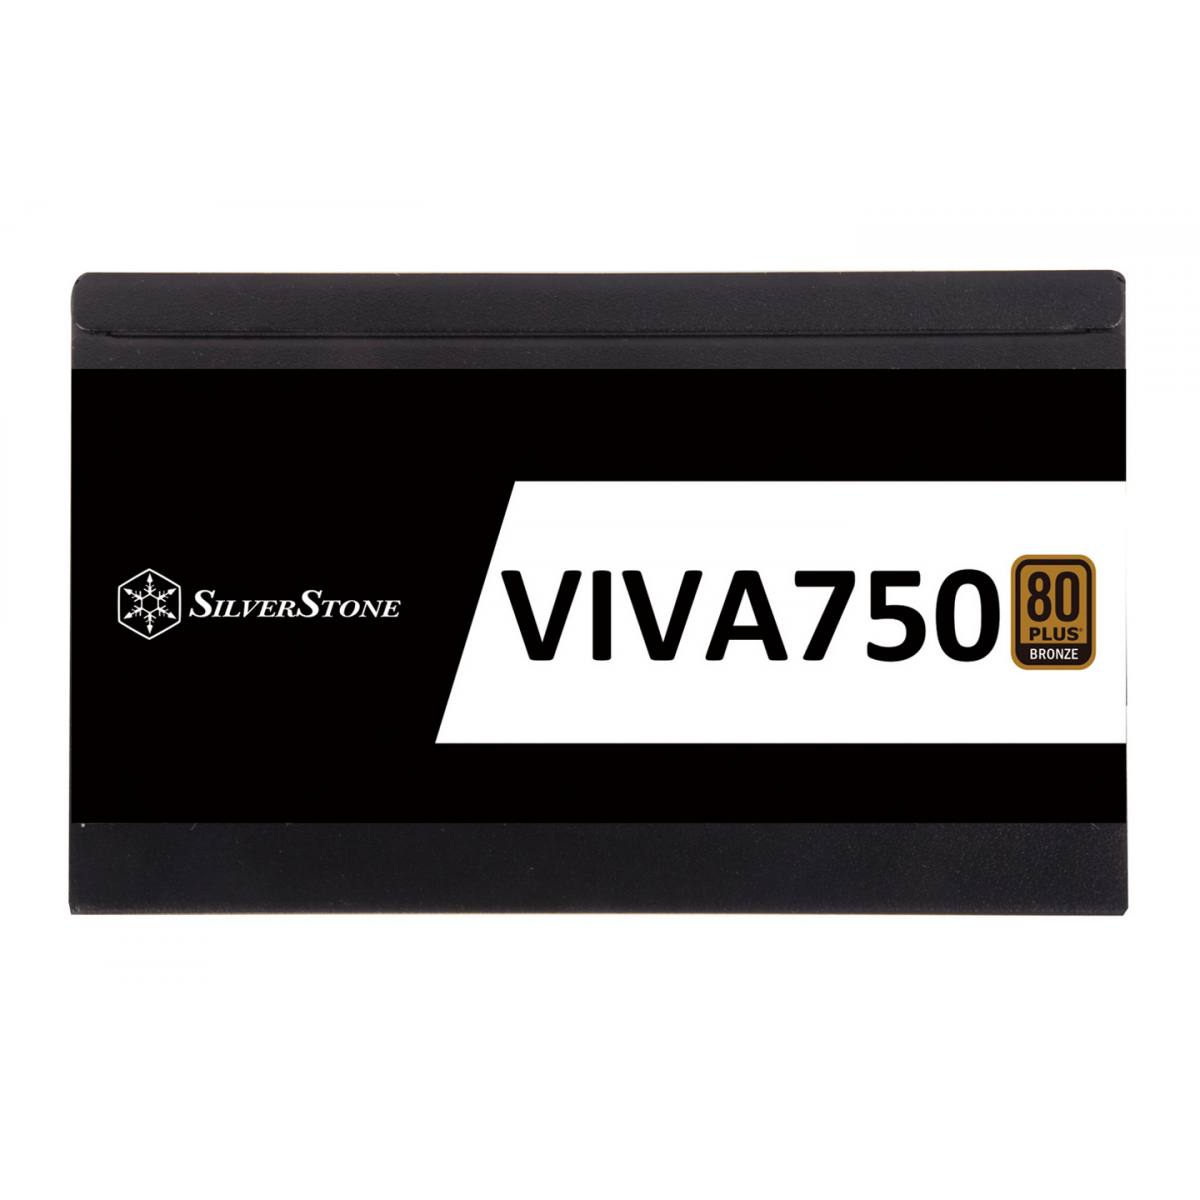 Nguồn Silverstone Viva 750 - 80 Plus Bronze